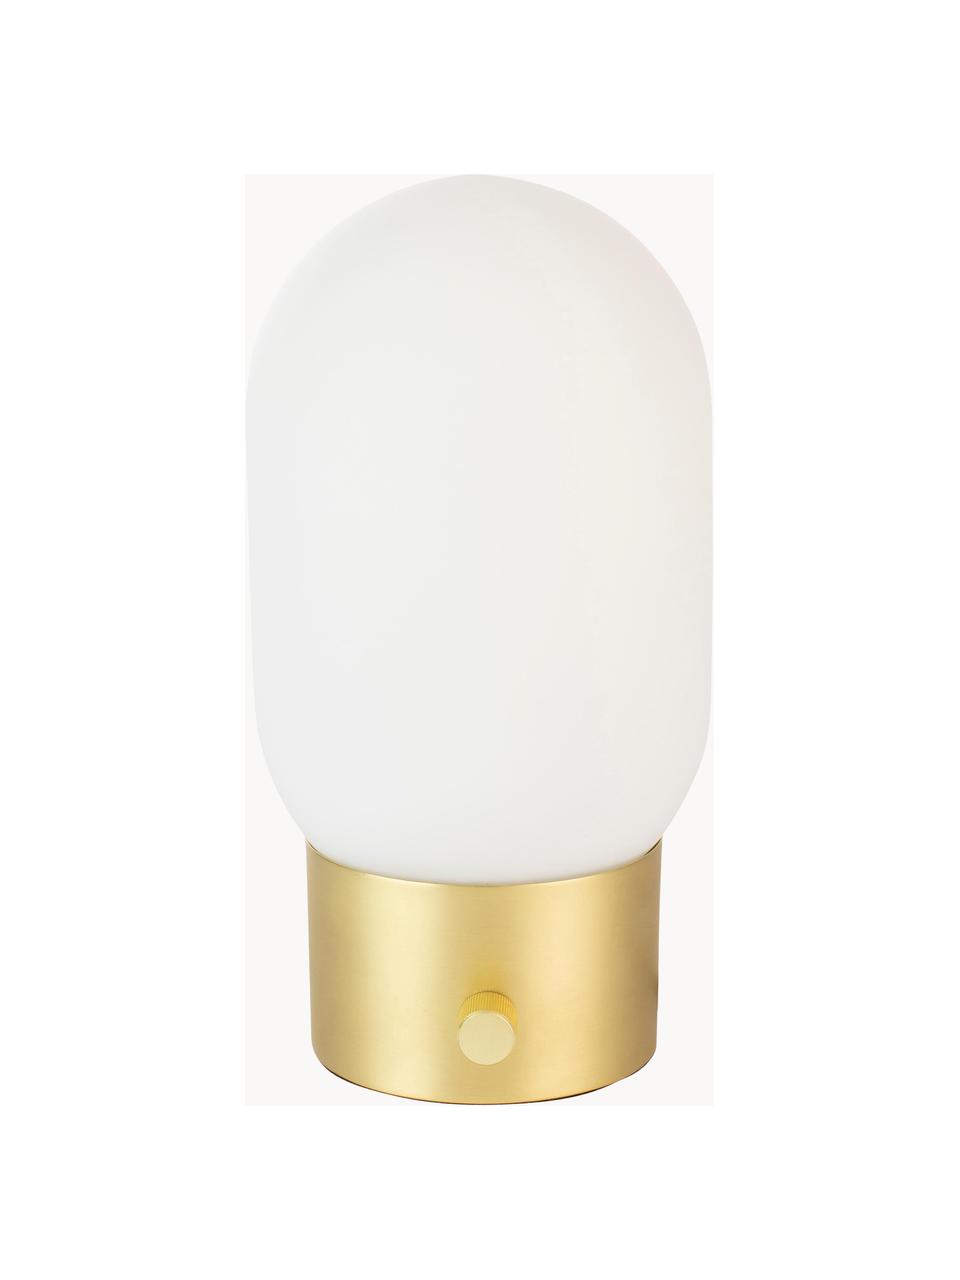 Kleine Dimmbare Nachttischlampe Urban mit USB-Anschluss, Lampenschirm: Opalglas, Lampenfuß: Metall, beschichtet, Weiß, Goldfarben, Ø 13 x H 25 cm